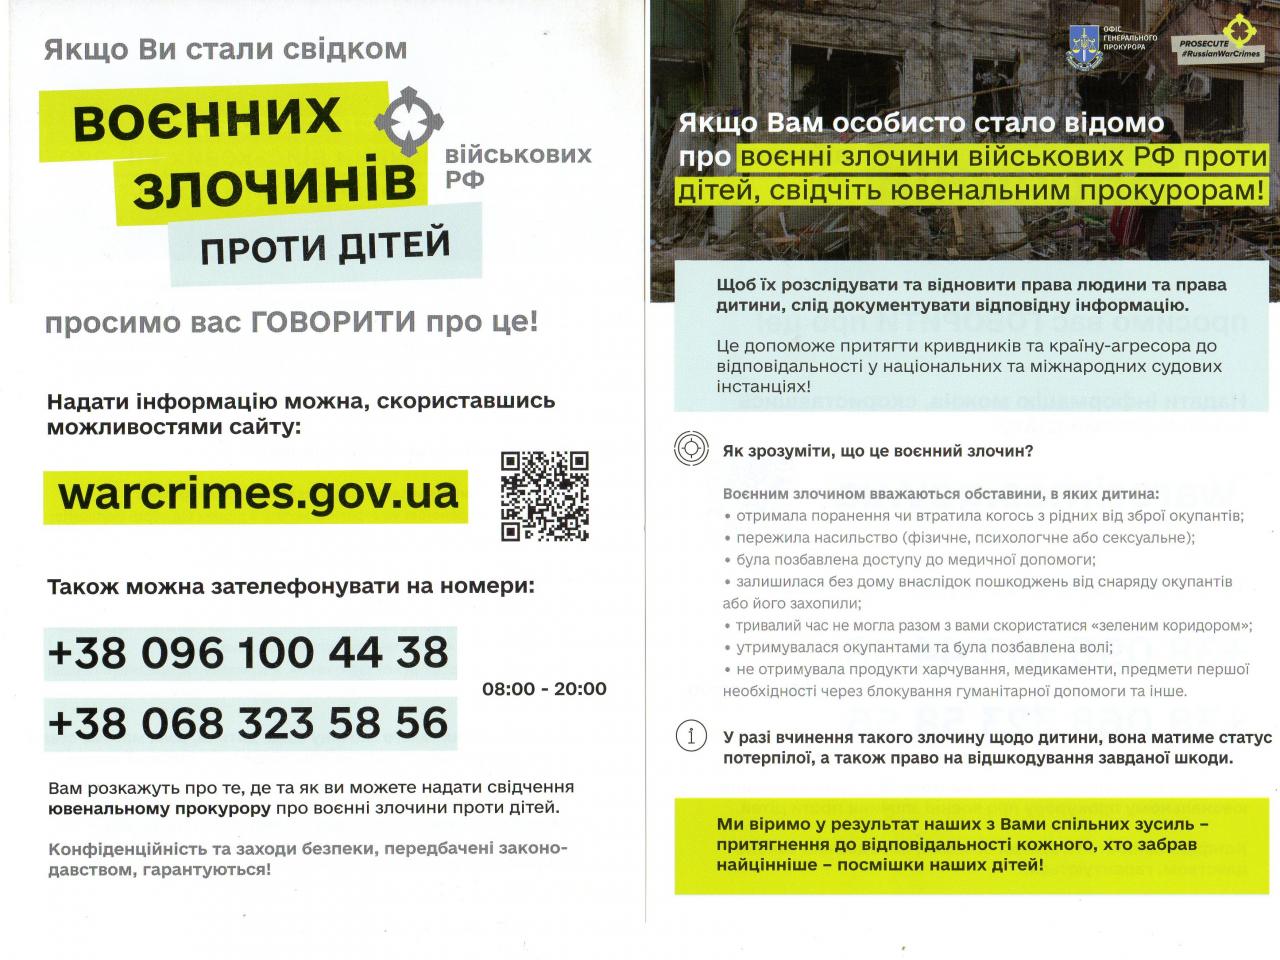 http://dunrada.gov.ua/uploadfile/archive_news/2022/04/20/2022-04-20_9884/images/images-78861.jpg